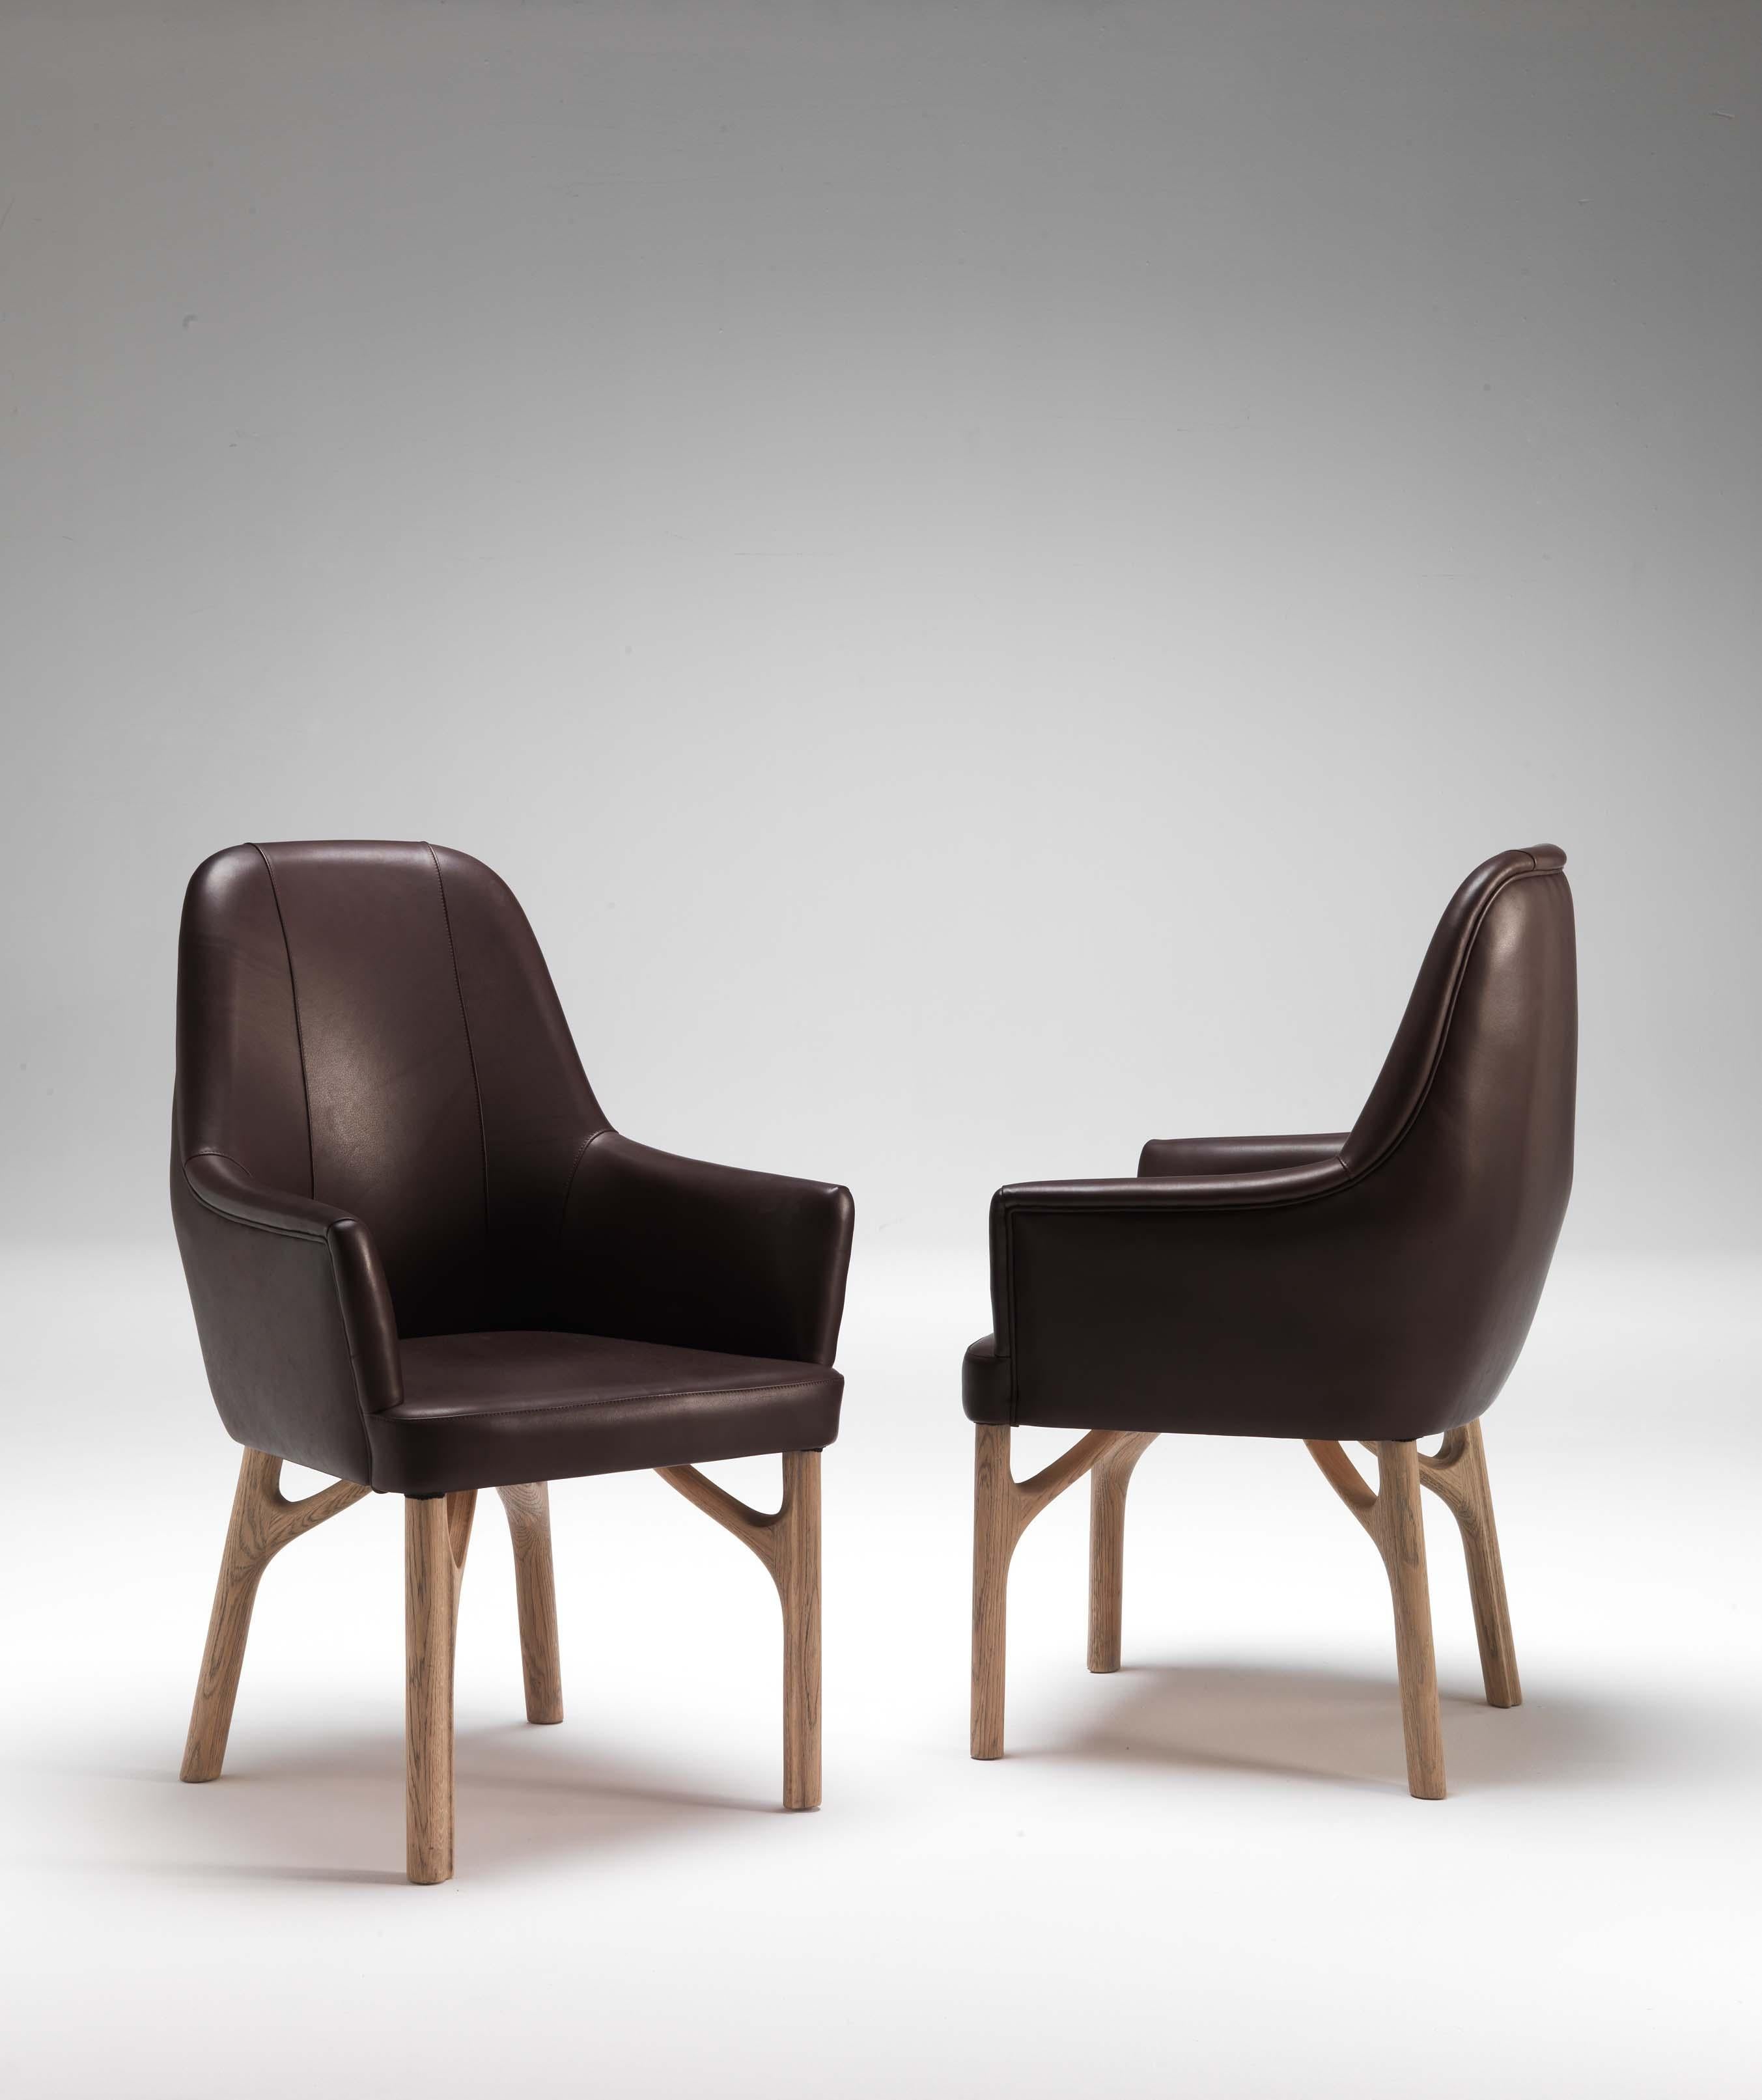 Le fauteuil Arpeggio est un chef-d'œuvre de l'artisanat italien conçu par Giopato & Coombes. Embrassant des formes sinueuses et des lignes essentielles, ces pièces accompagnent délicatement les tables avec une touche d'élégance intemporelle. Les